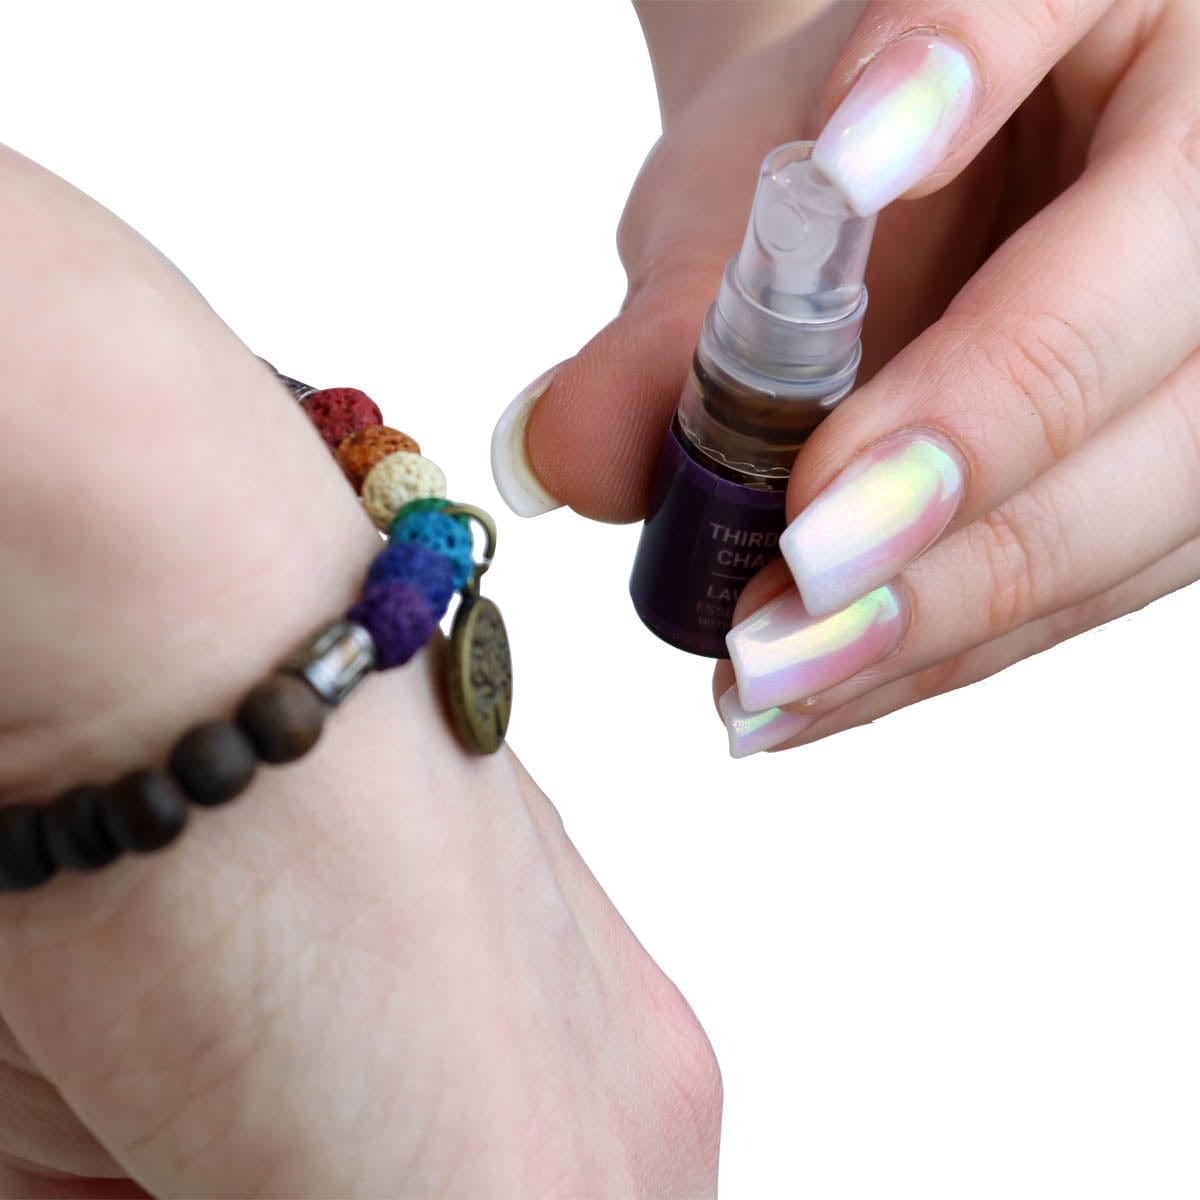 chakra scents bracelet with aroma spray bottle